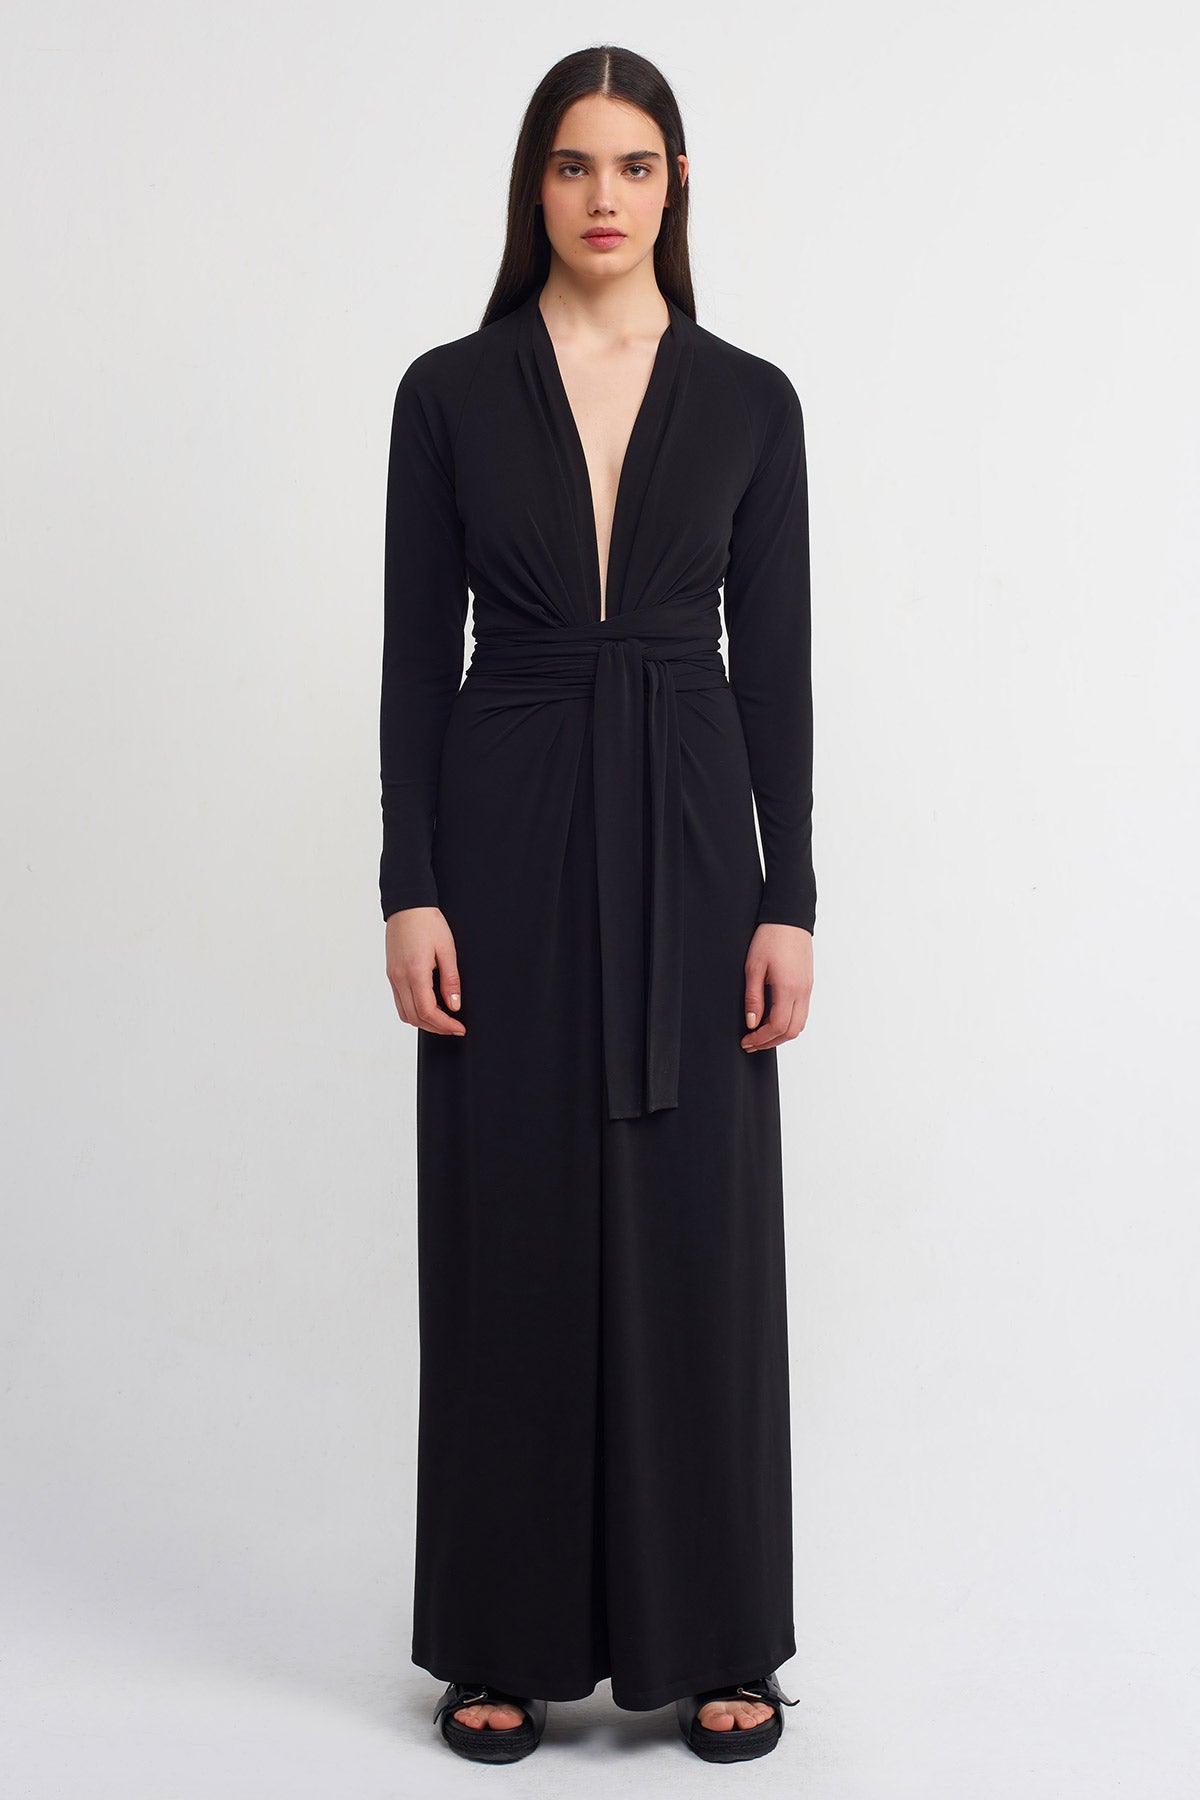 Black Deep V-Neck Belted Jersey Dress-K234014098